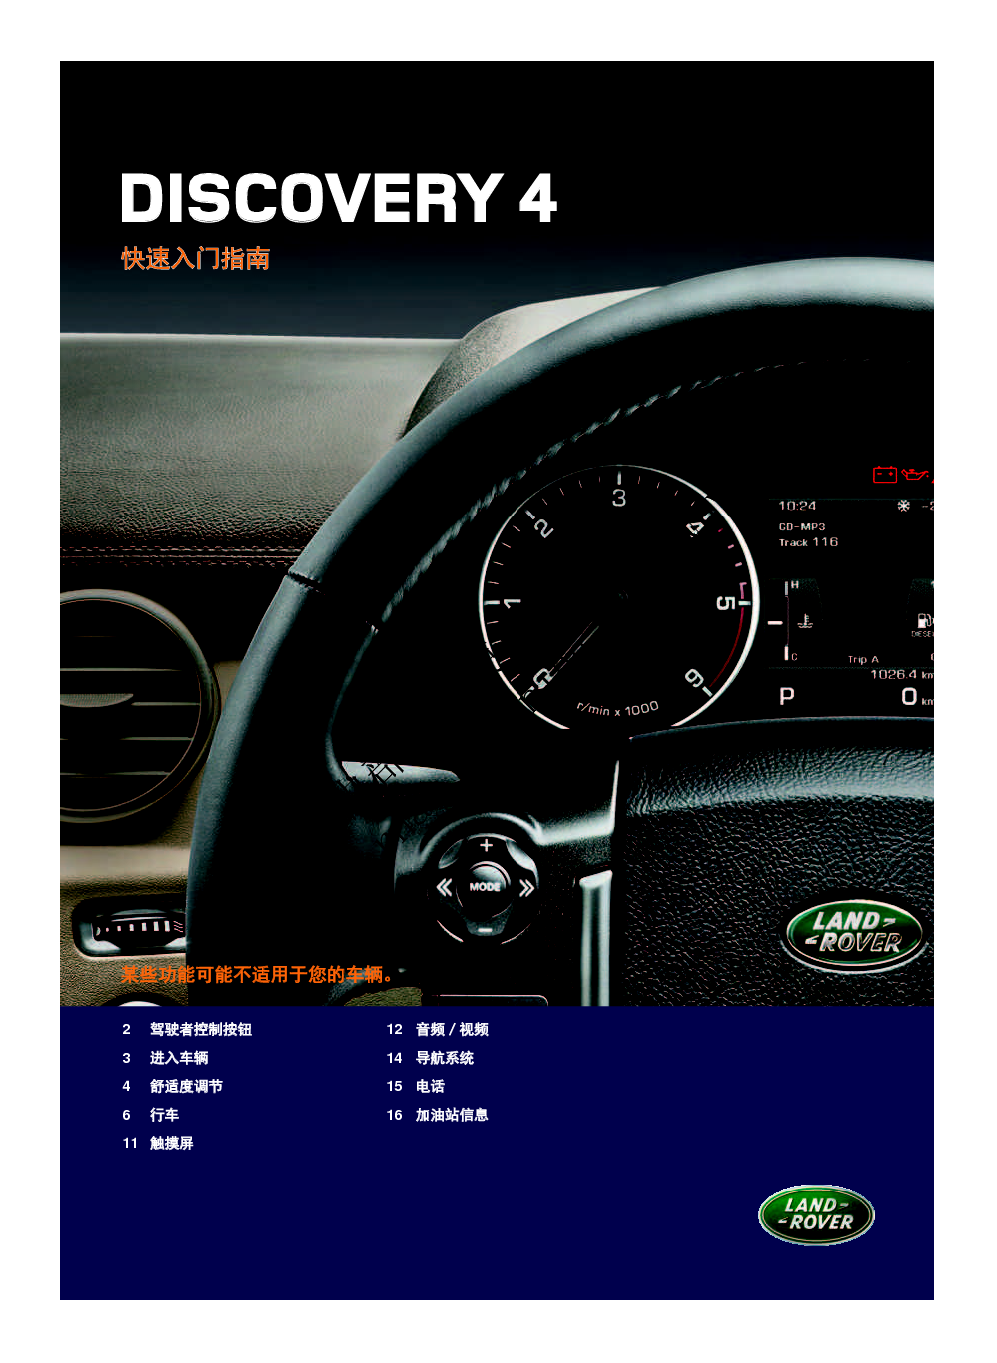 路虎 Land Rover DISCOVERY 4 发现四代 快速参考指南 封面